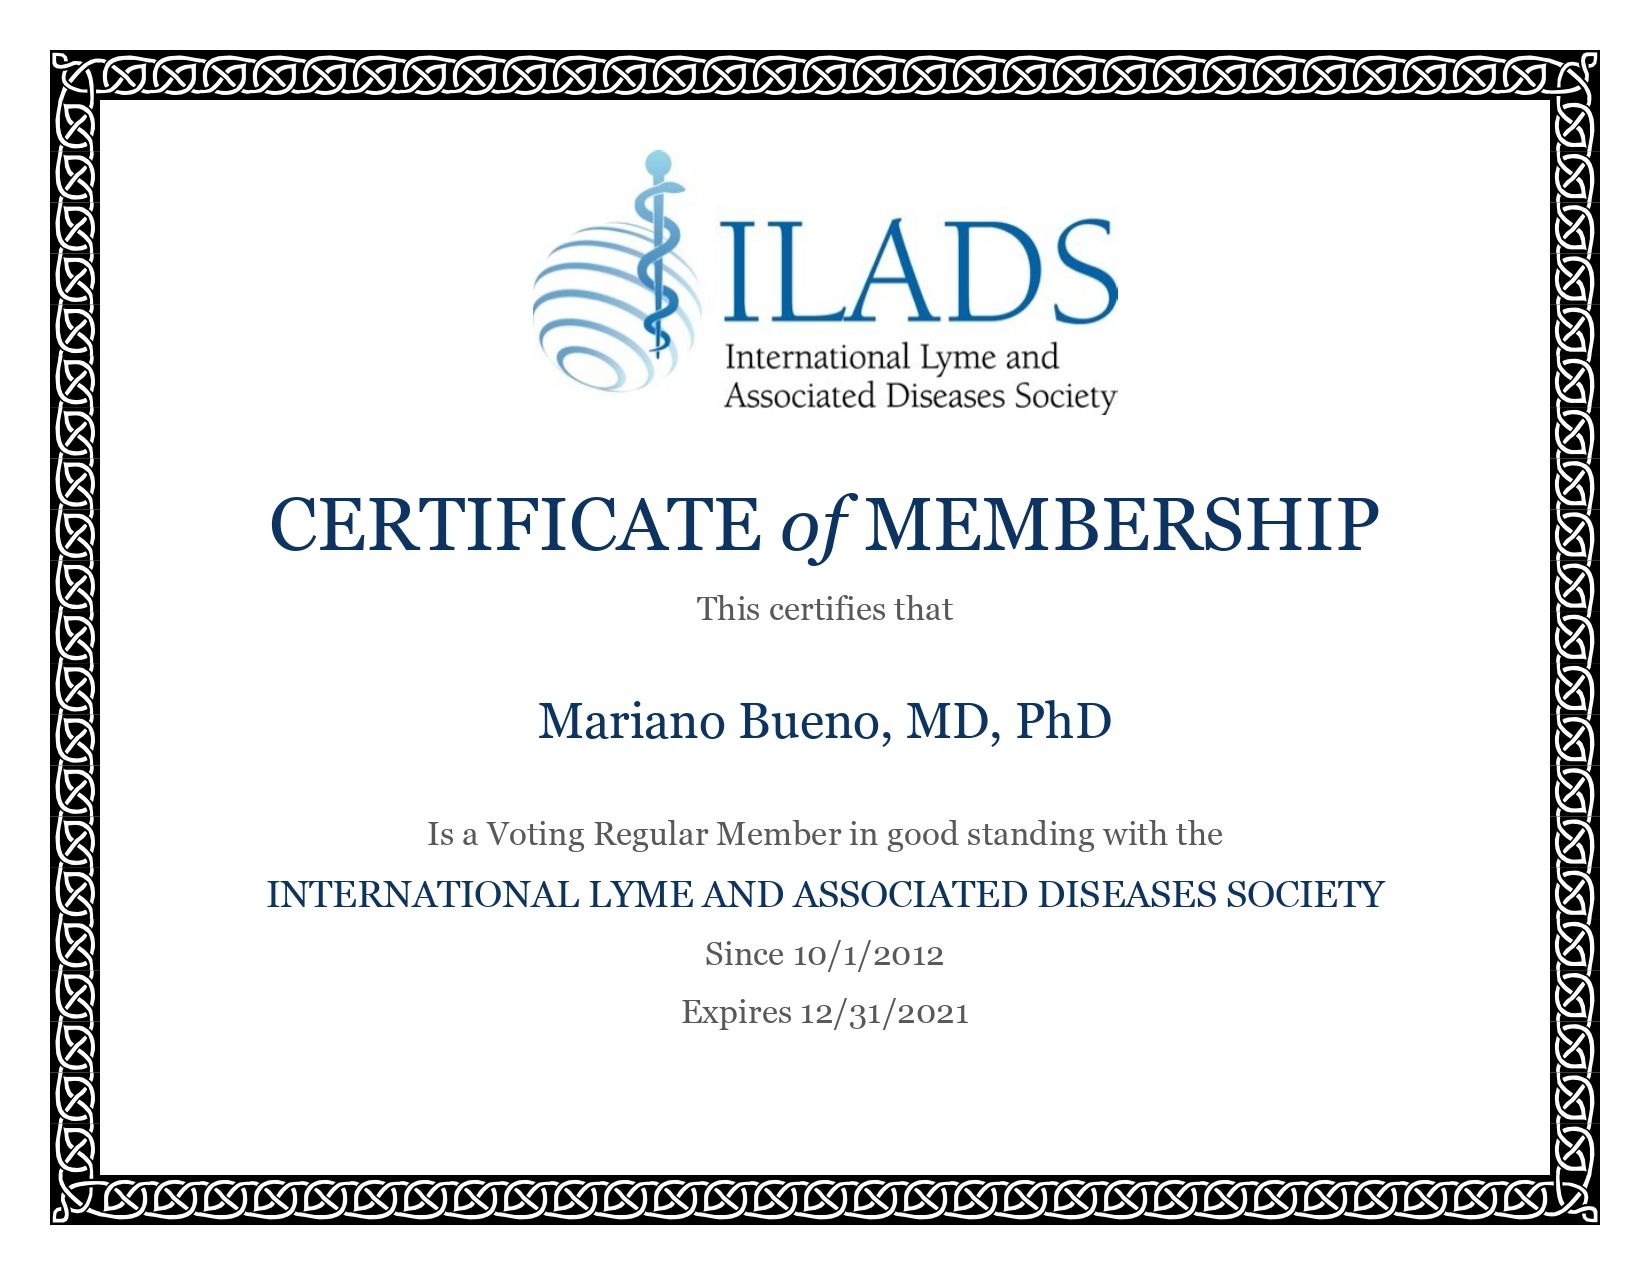 Certificat de membre de l'ILADS